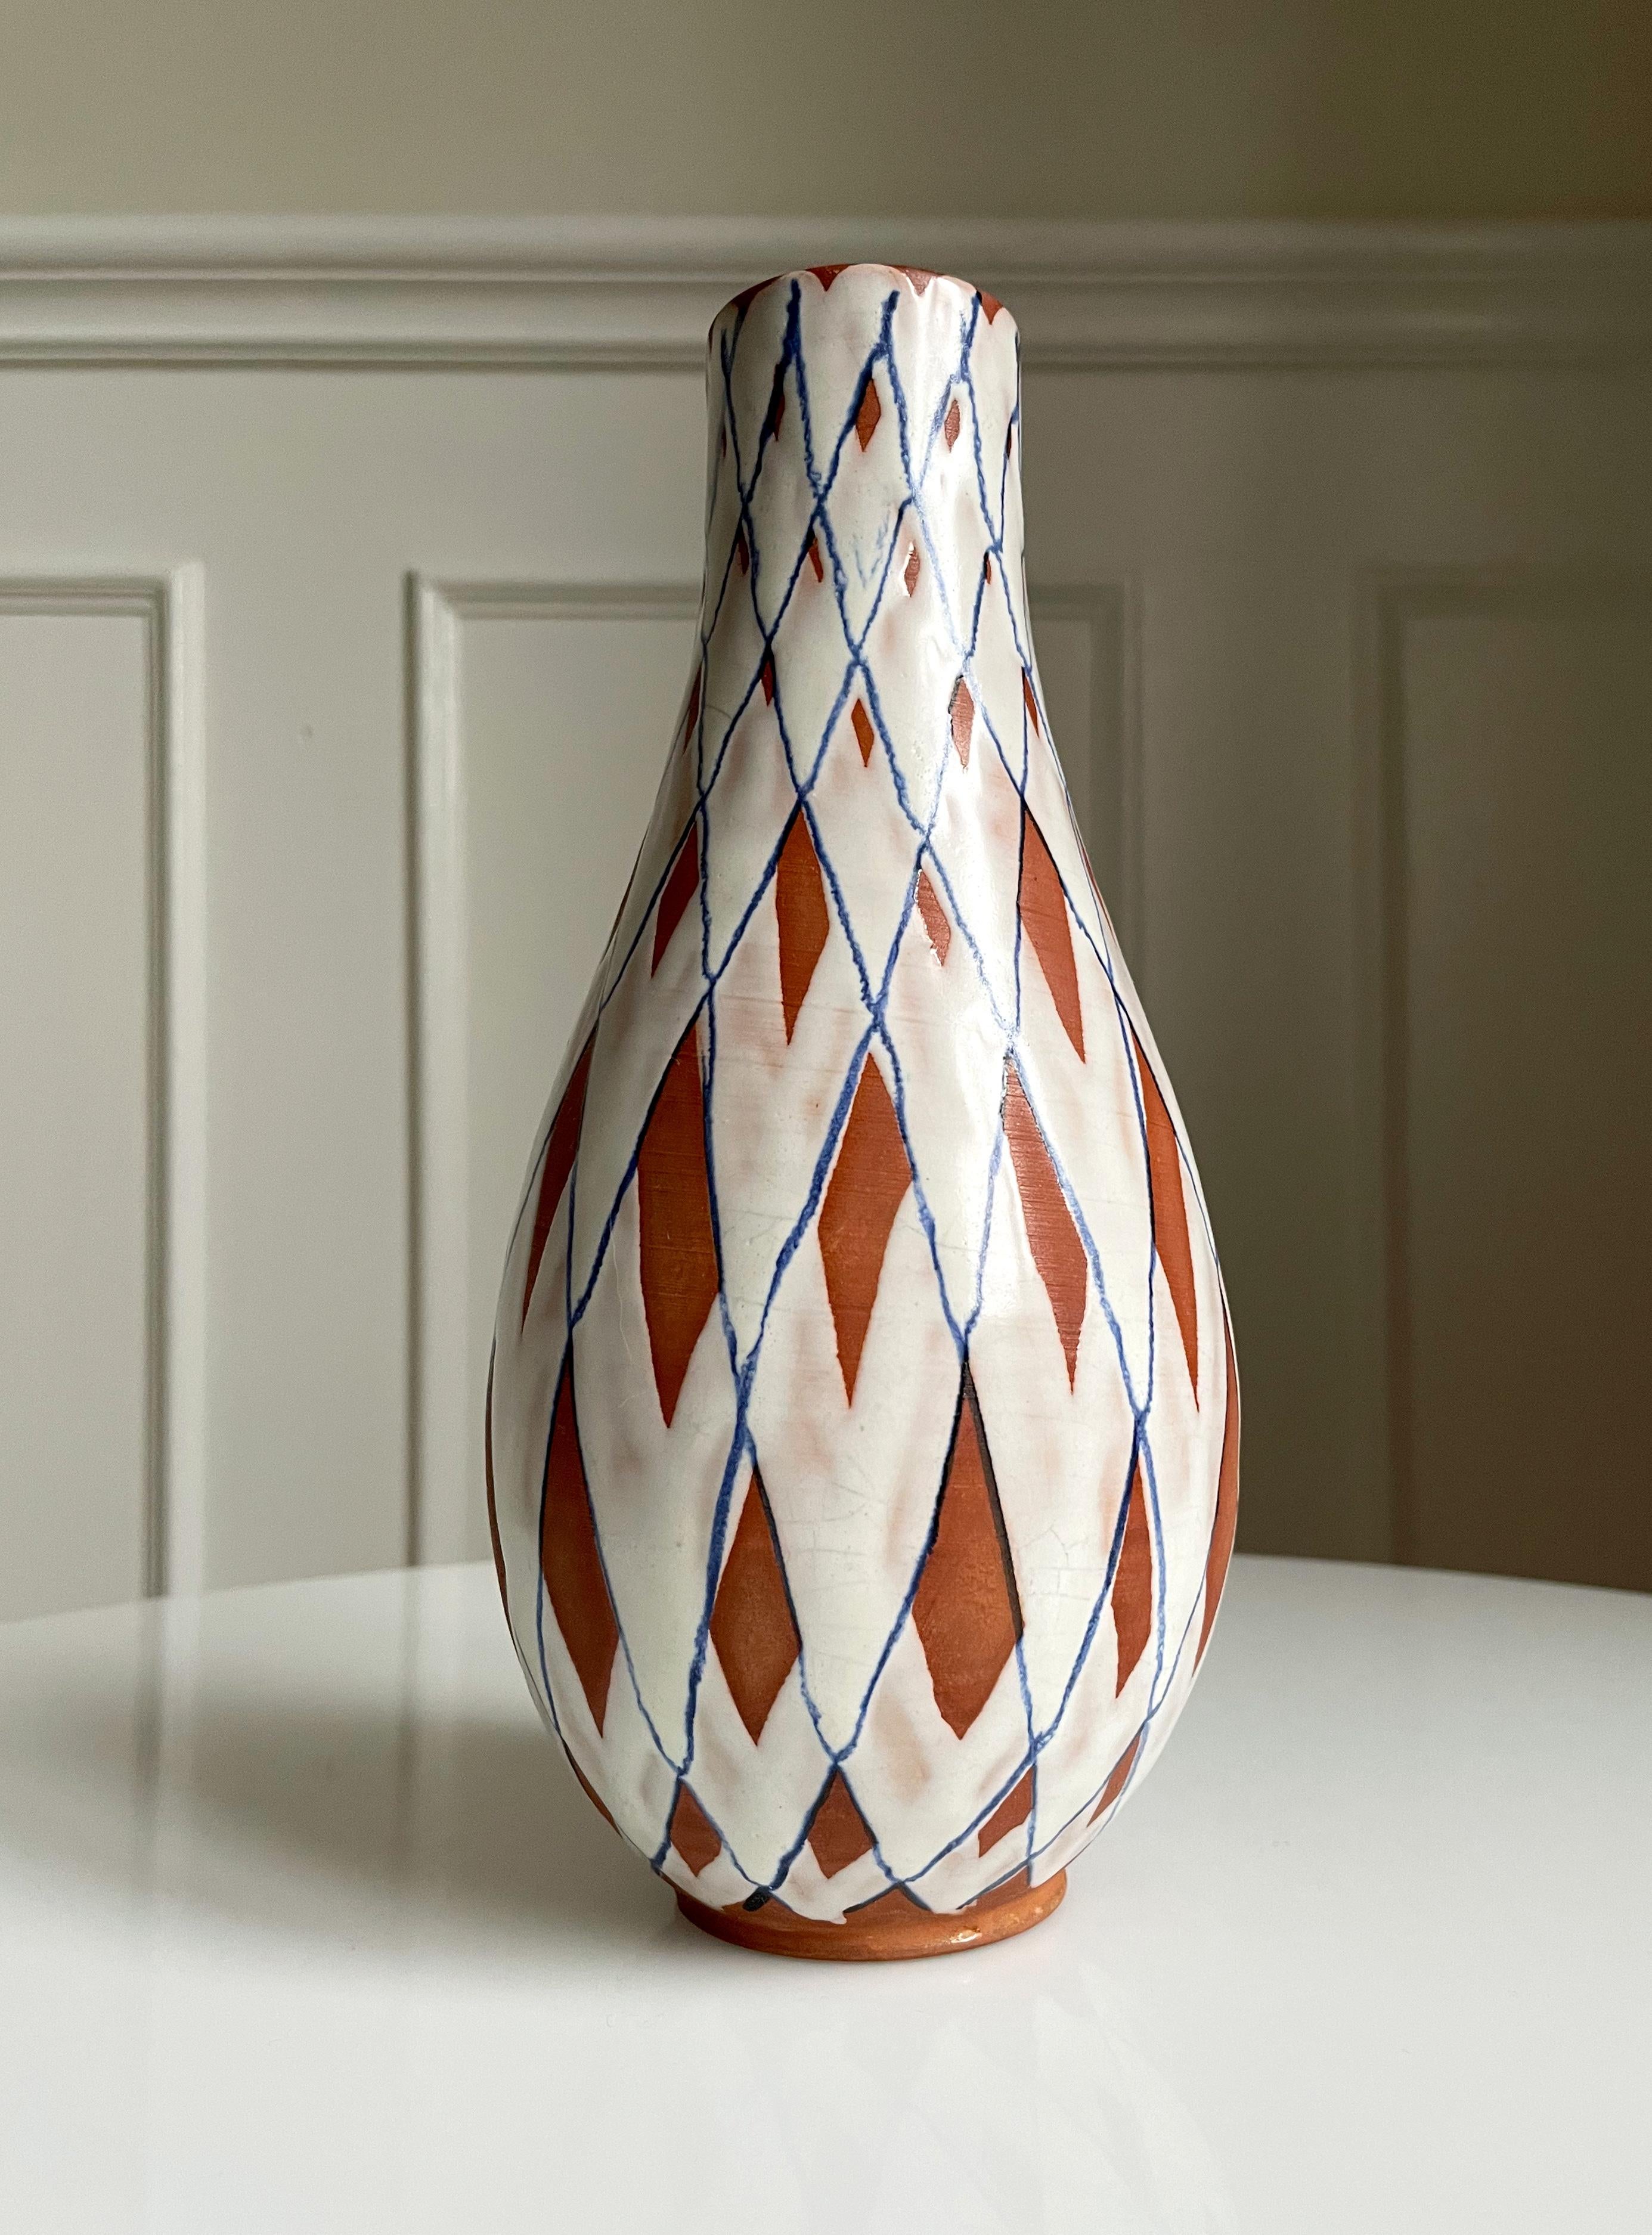 Vase en céramique peint à la main, datant de 80 ans, avec une décoration en damier, fabriqué par Gabriel Keramik en Suède dans les années 1940. Partiellement glacé en blanc et une fine bande bleue, partiellement non glacé et brut. Entièrement vitré